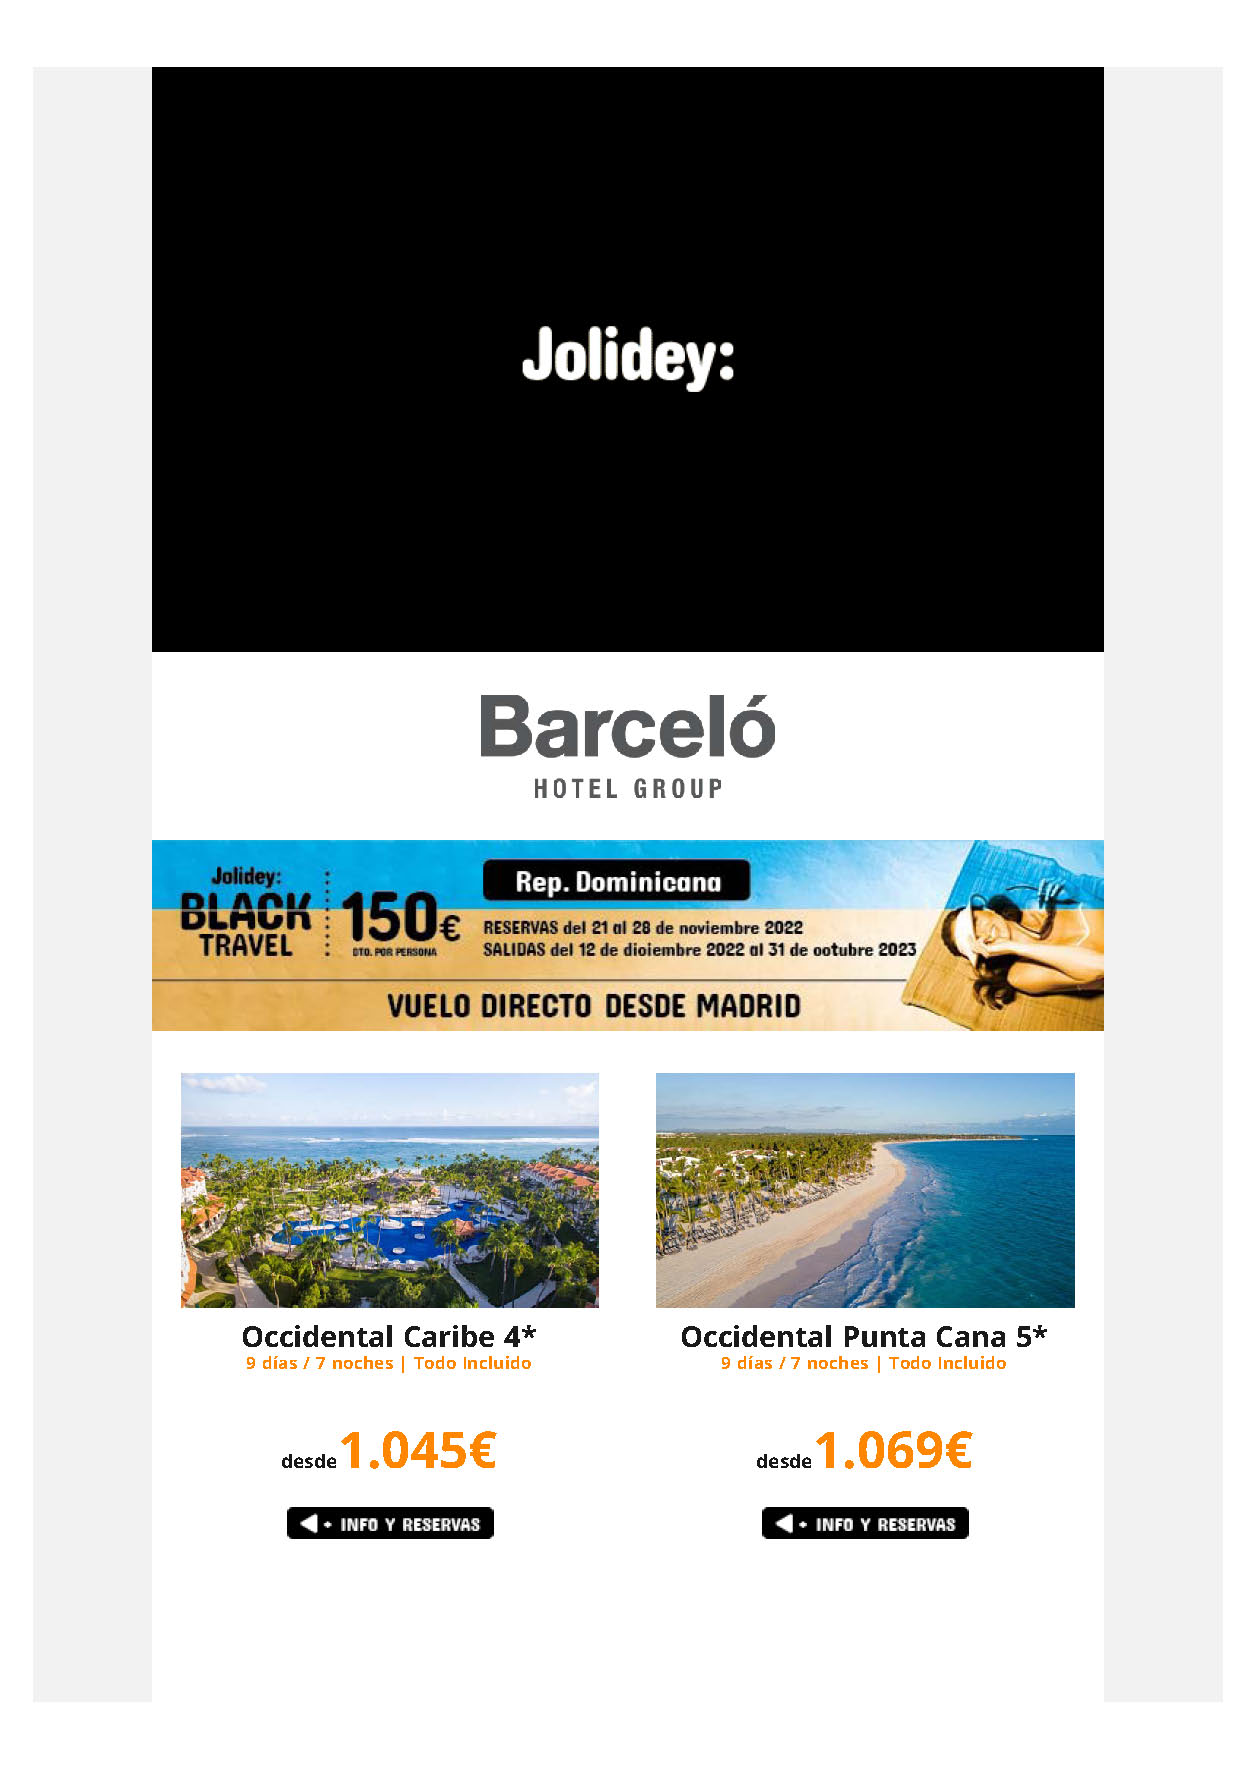 Oferta Jolidey Black Friday 2022 Caribe Cuba Riviera Maya Republica Dominicana en Hoteles Barcelo descuento 150 €